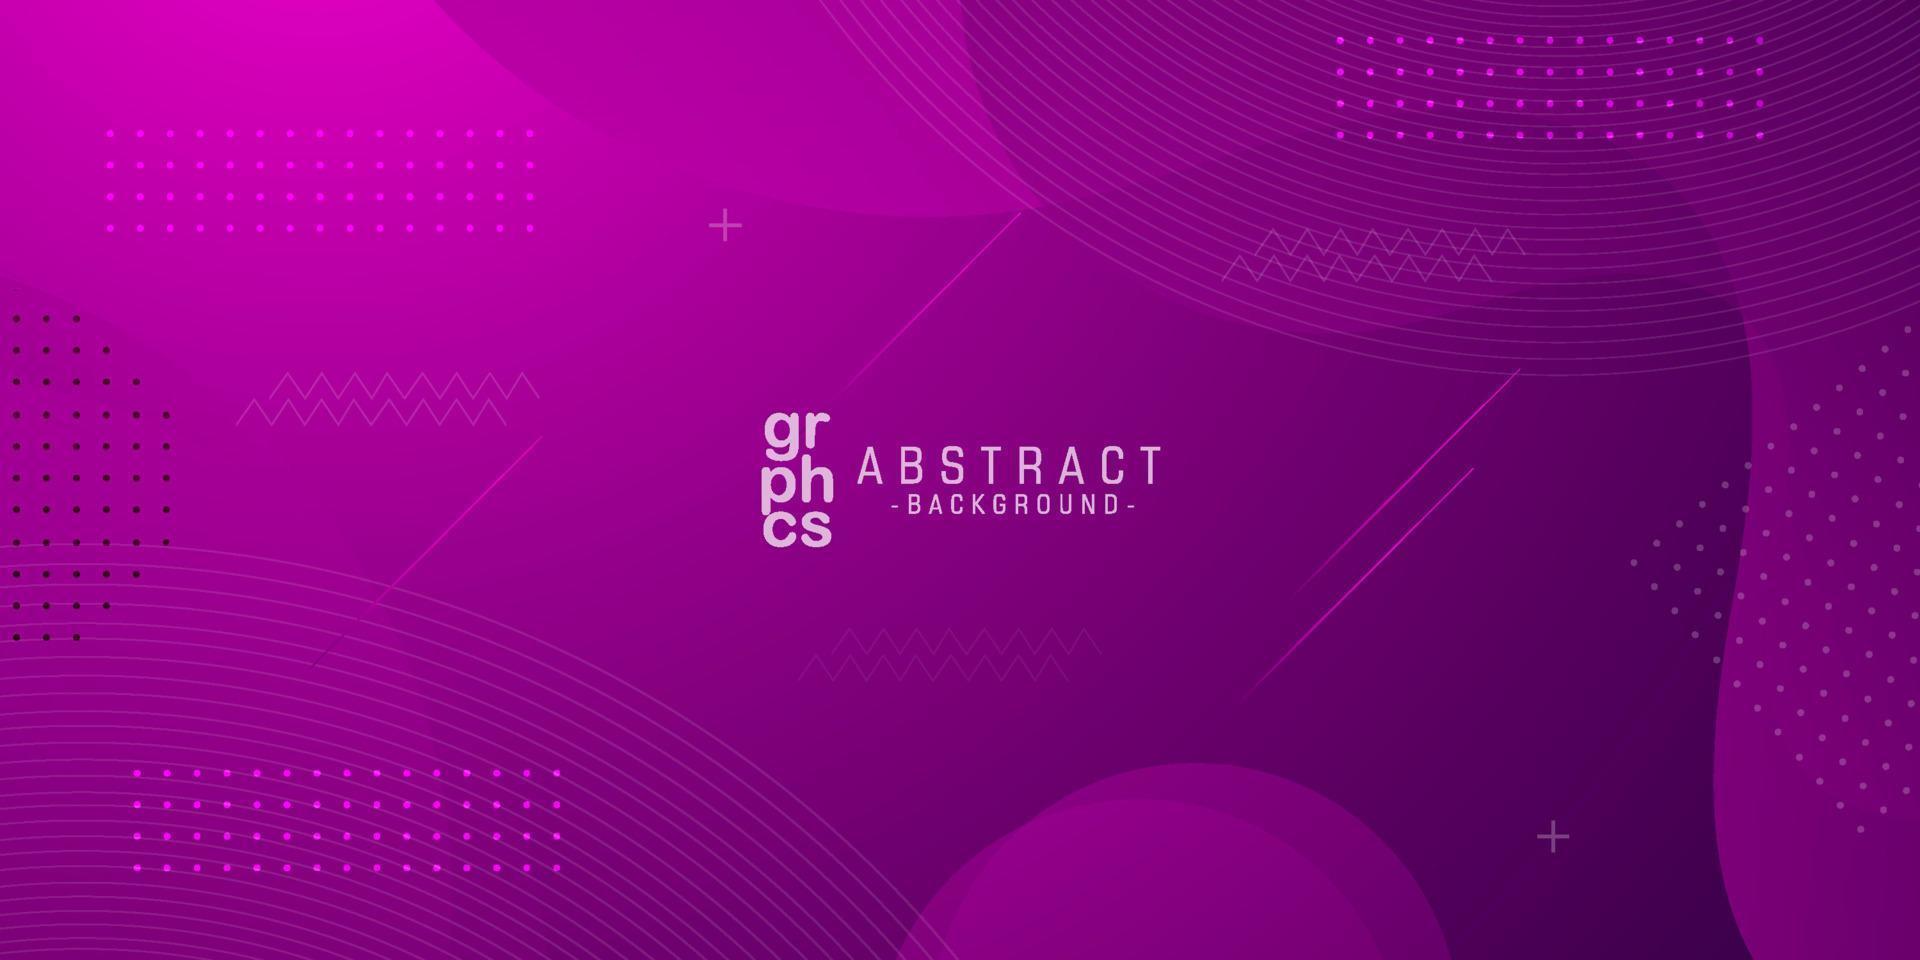 dynamisk strukturerad abstrakt bakgrundsdesign i 3d-stil med lila och rosa färg. kan användas för affischer, plakat, broschyrer, banderoller, webbsidor, rubriker, omslag och annat. eps10 vektor